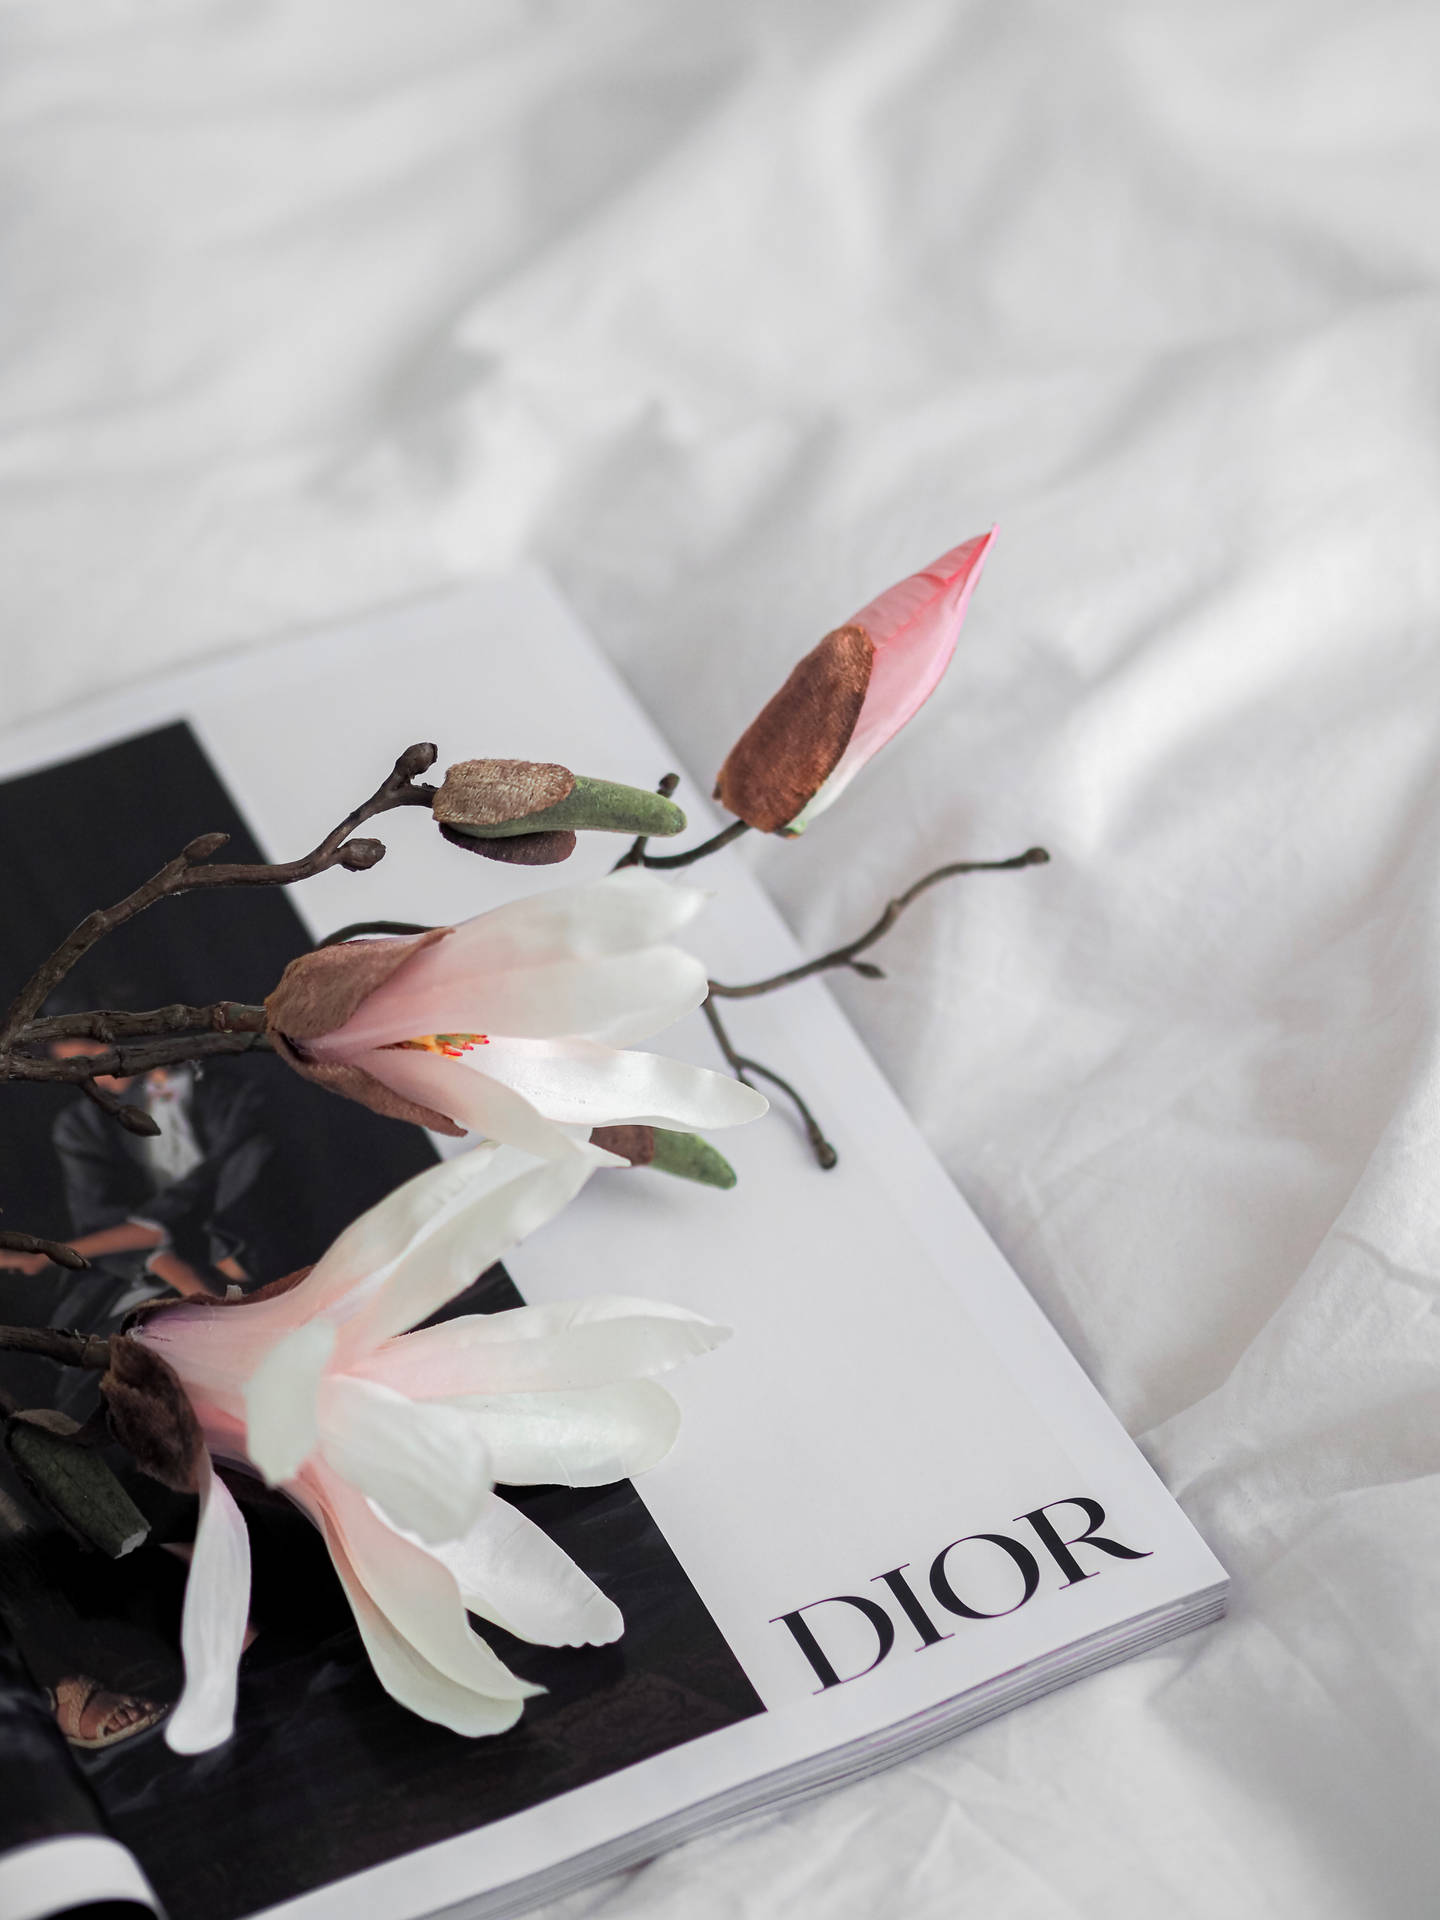 Dior Magnolia Flower Background